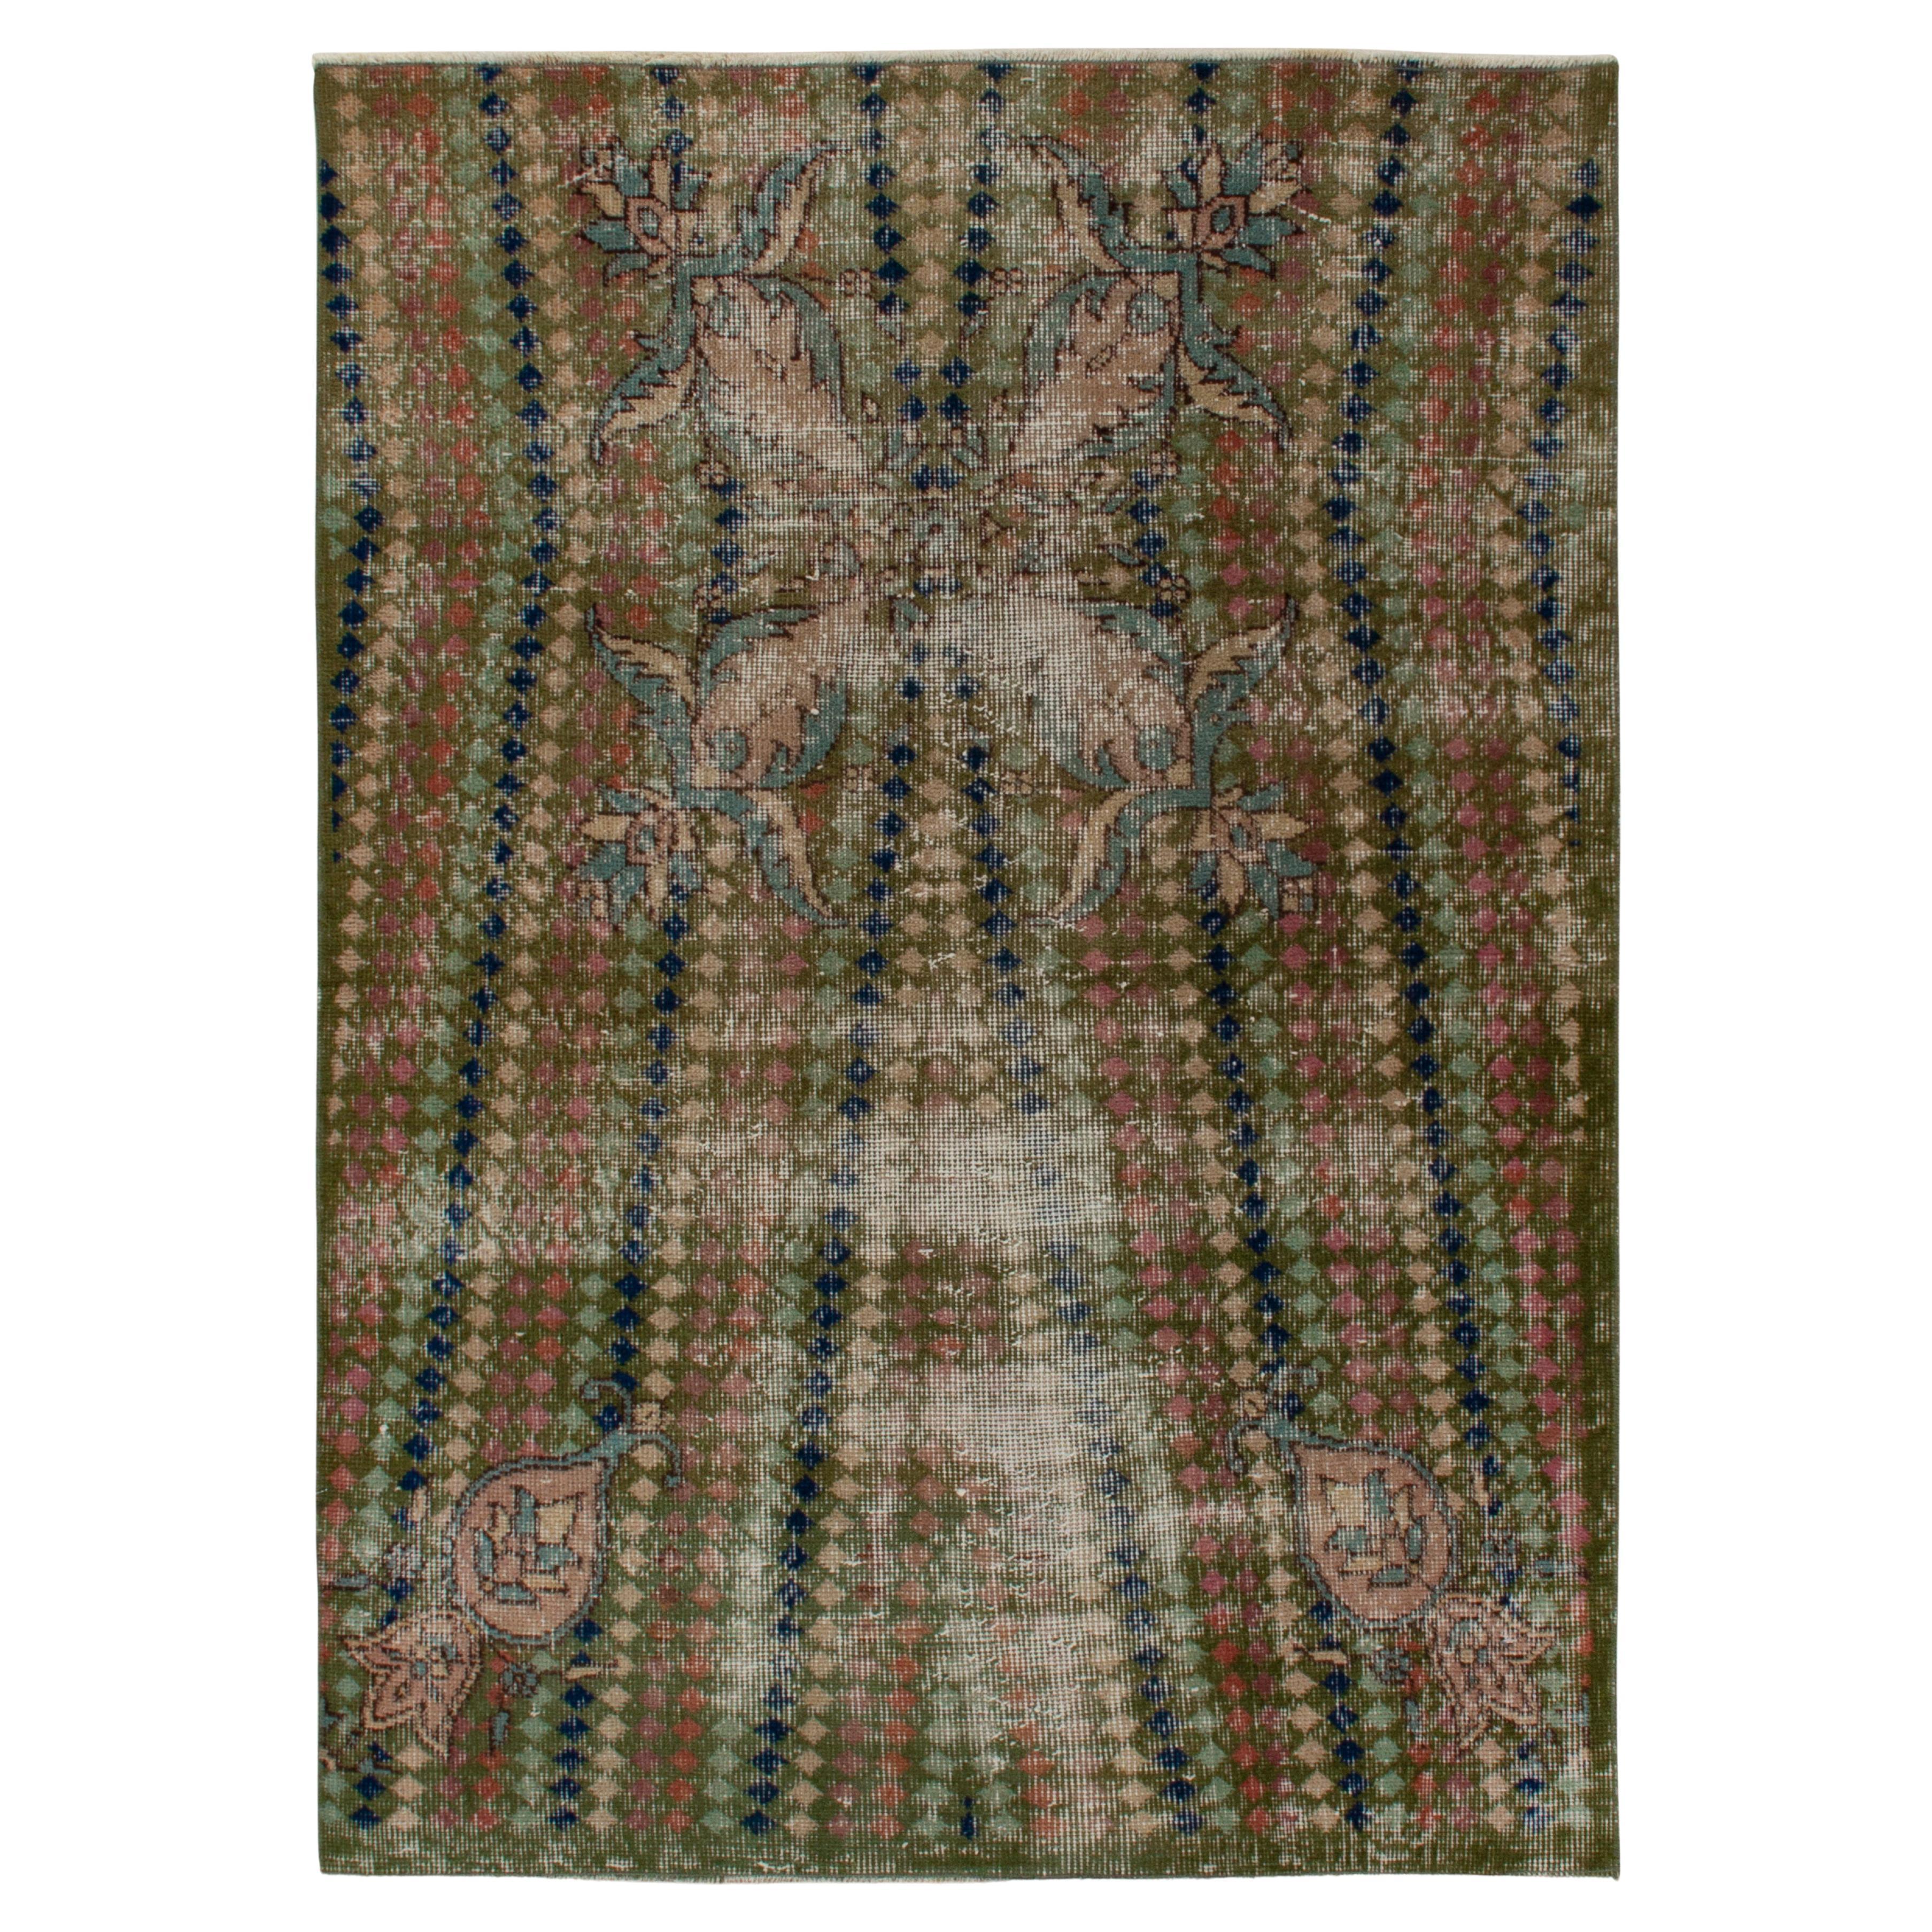 Vintage-Deko-Teppich aus den 1960er Jahren in Grün mit mehrfarbigen geometrischen Mustern von Teppich & Kelim